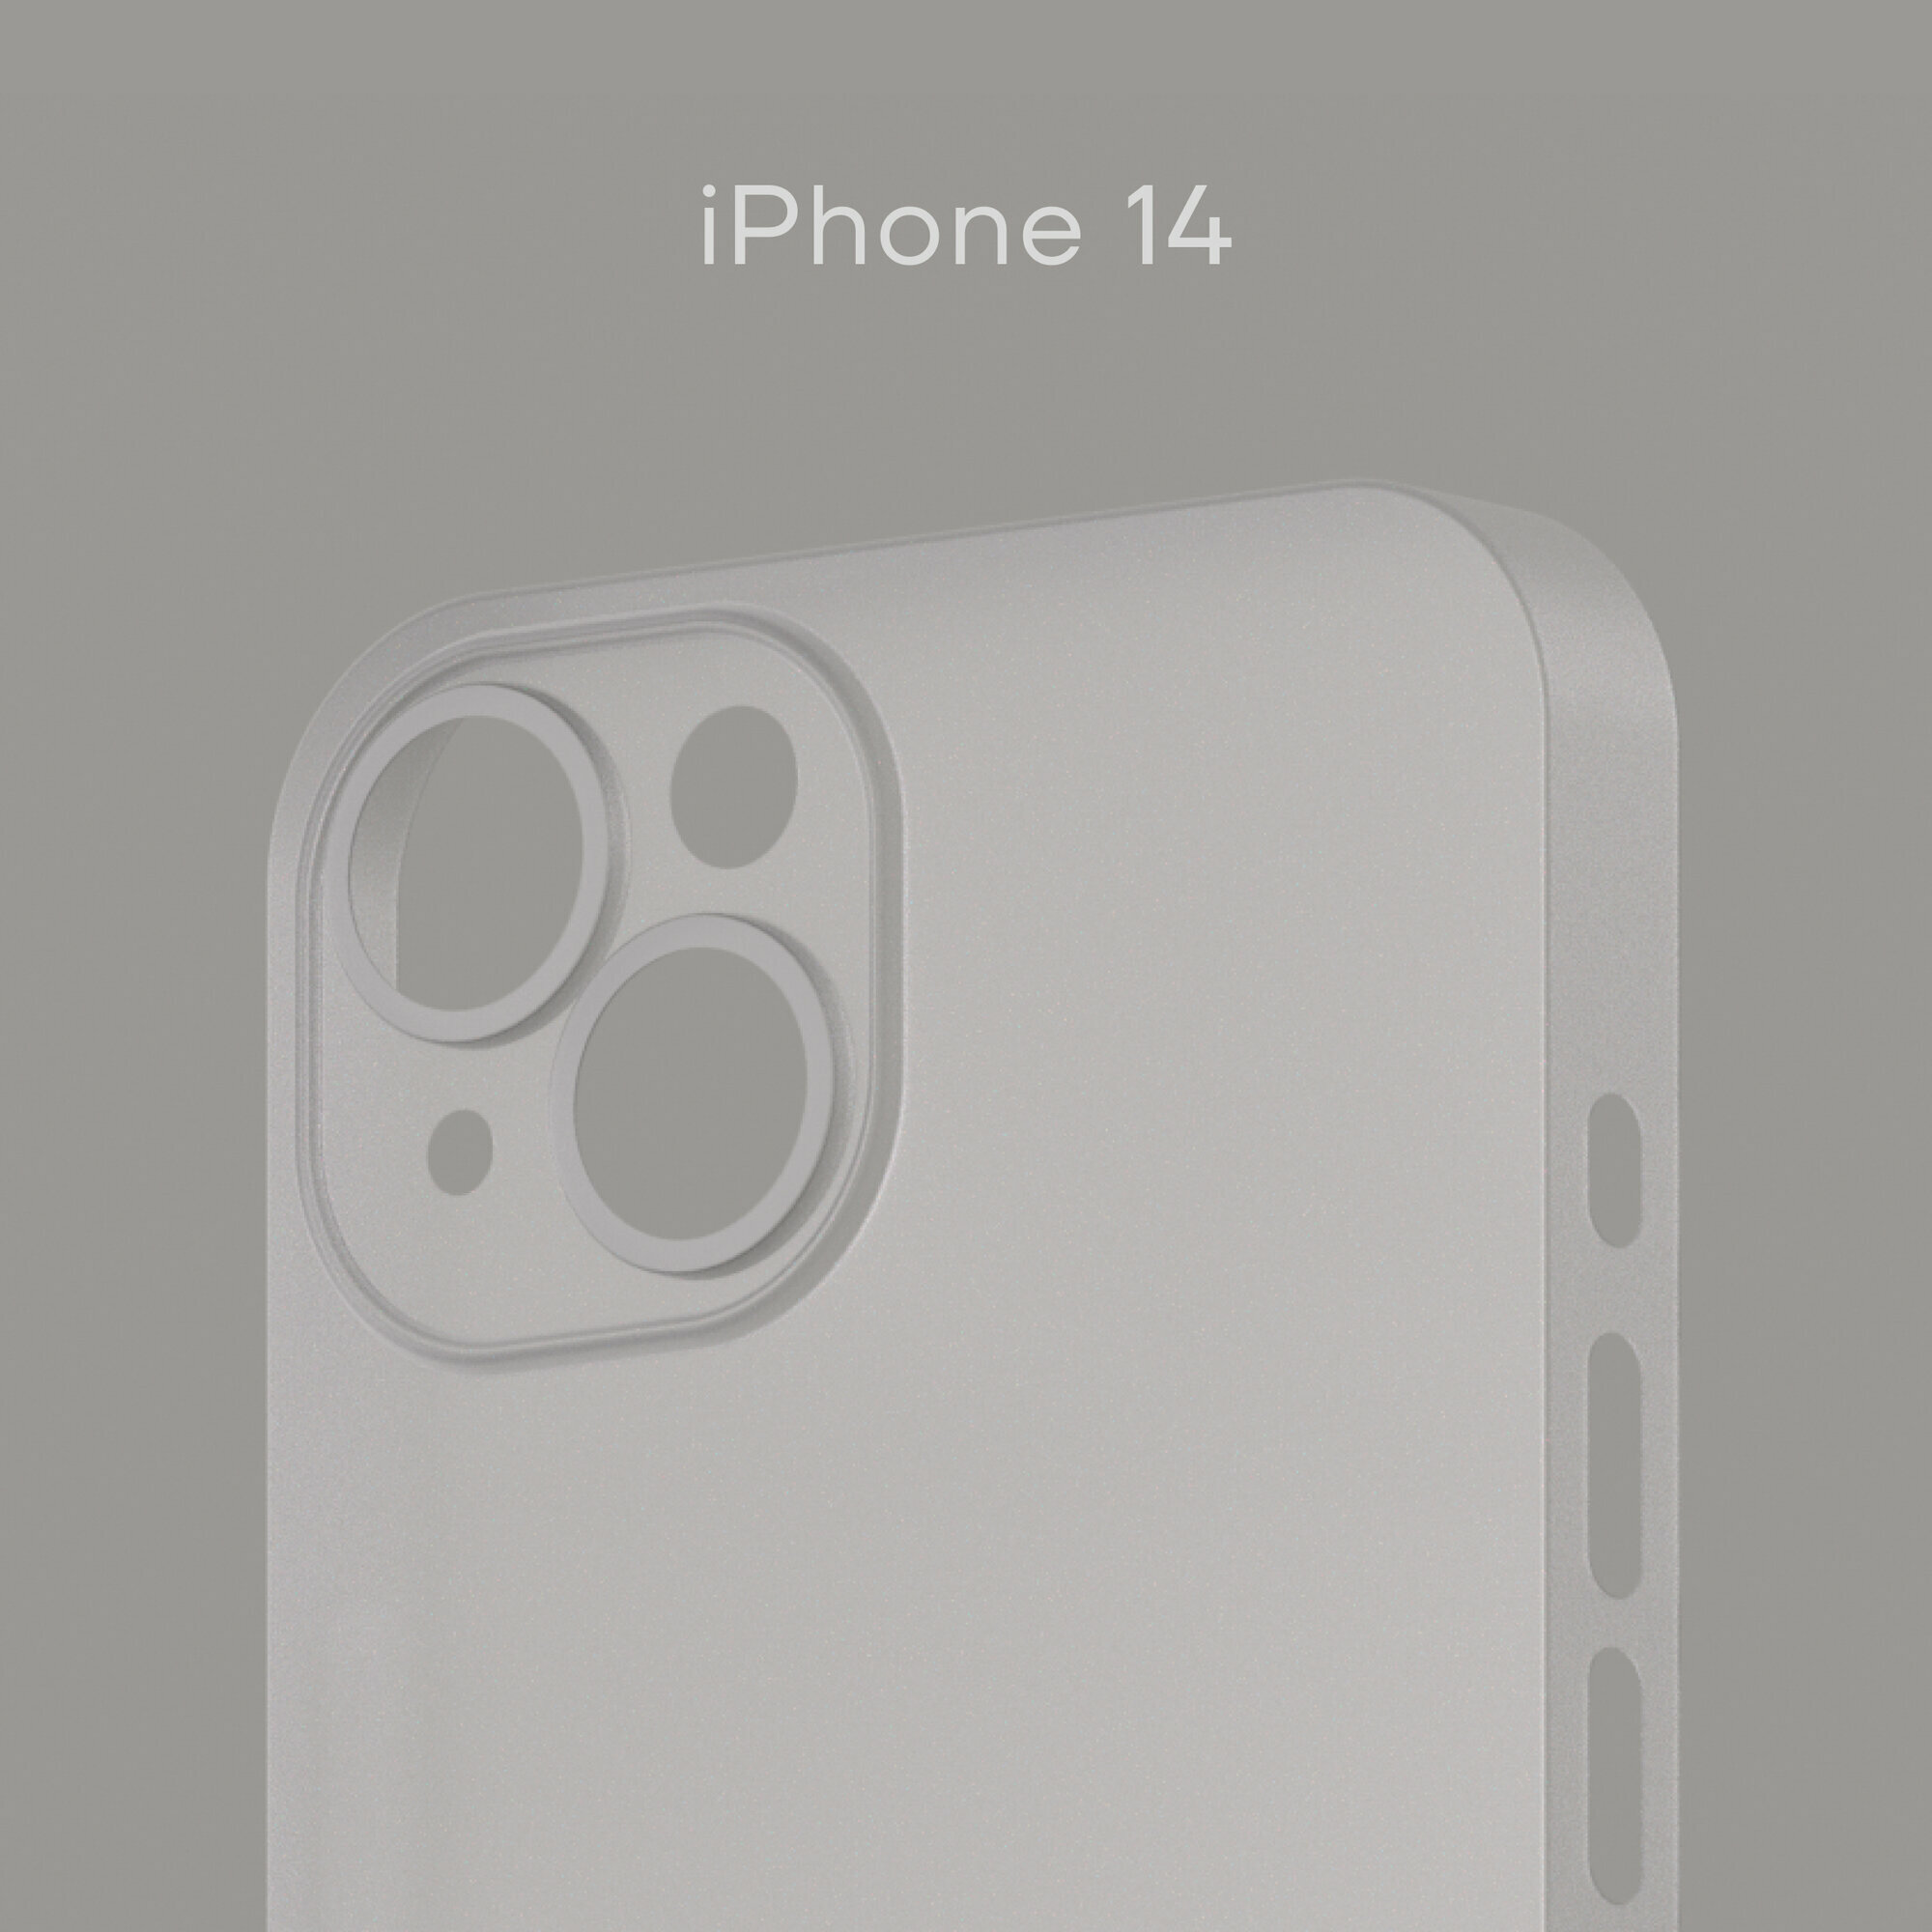 Тонкий чехол Уголок Air Case для iPhone 14 / Айфон 14 толщиной 0,3 мм, белый, матовый, пластиковый